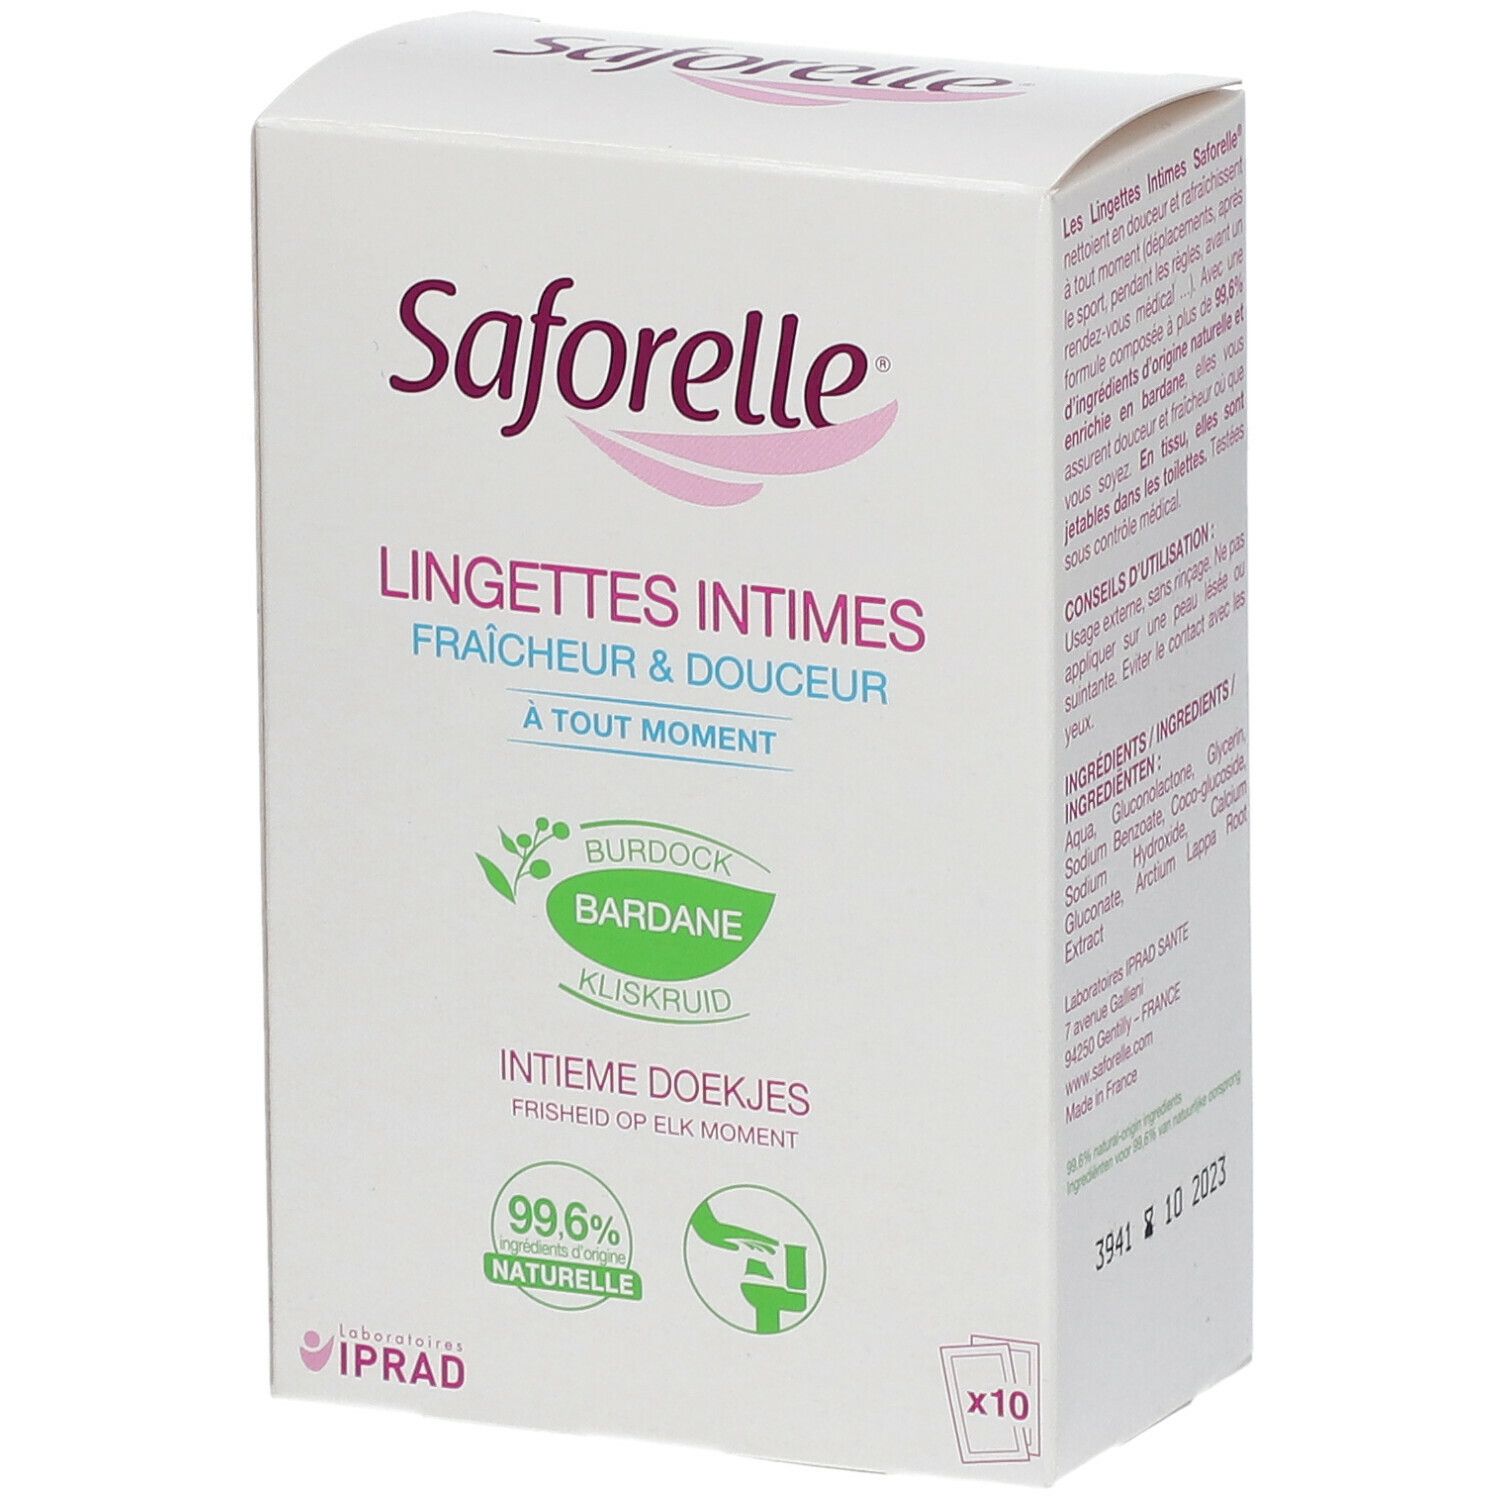 Saforelle® Lingettes intimes Fraîcheur & Douceur